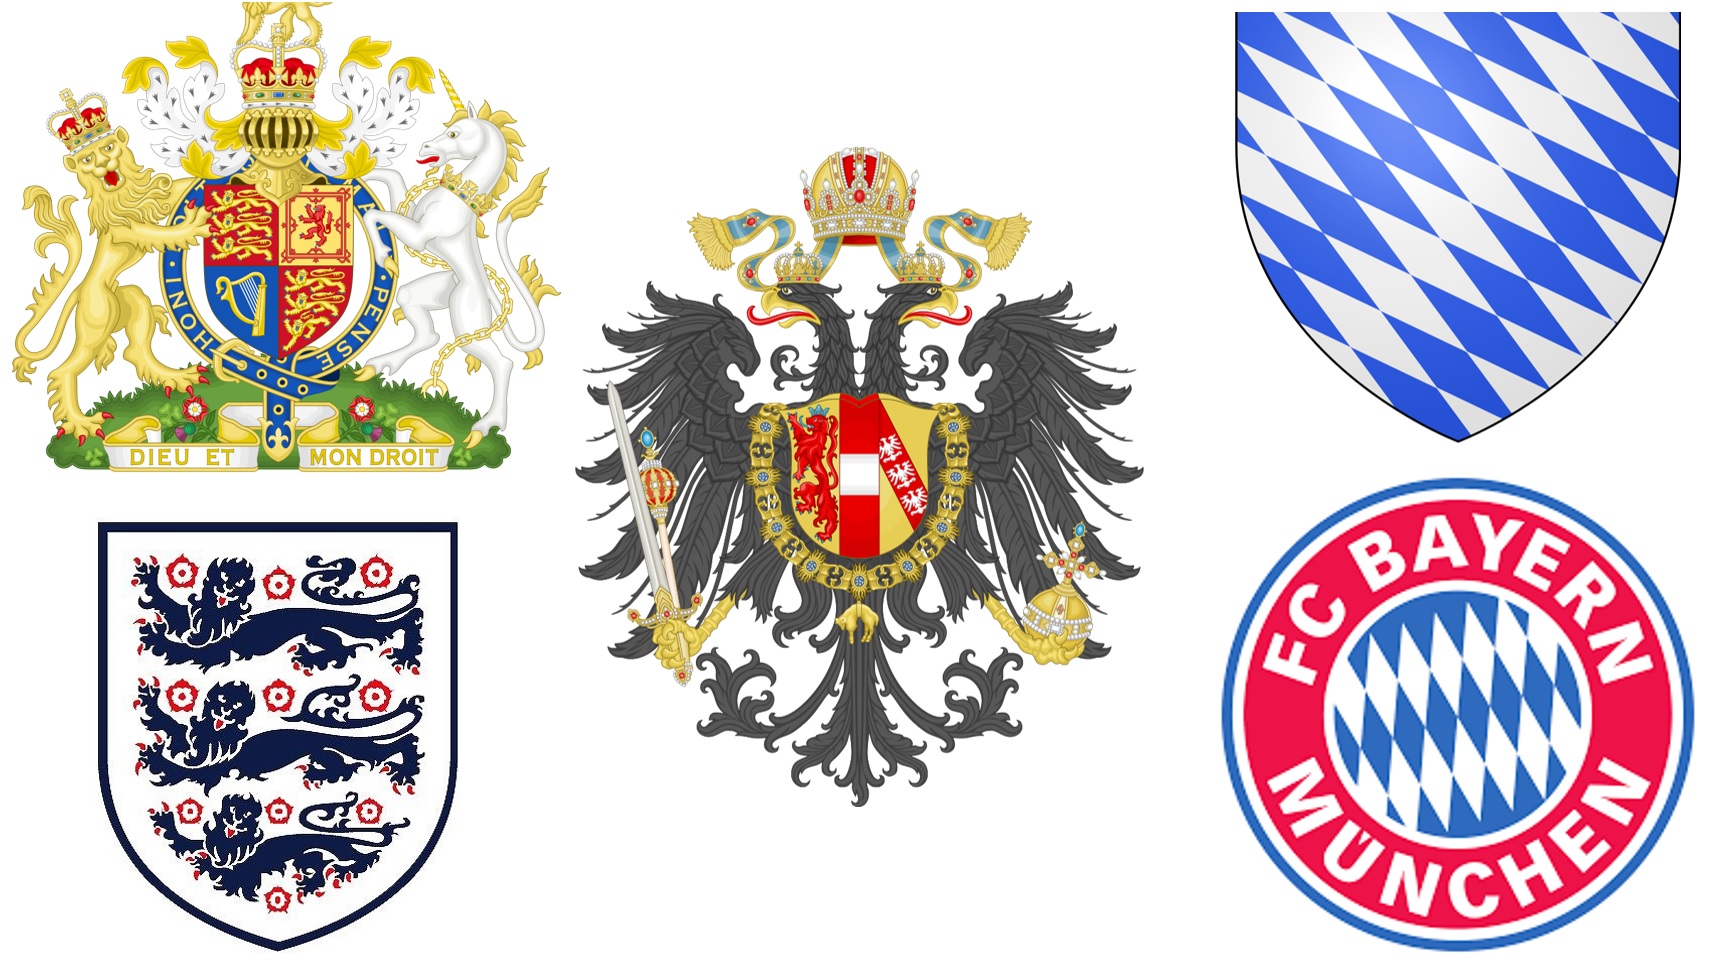 紋章 ヨーロッパ 英国王室 ユリ 十字紋 そして現代に生きる紋章たち はてはてマンボウの 教養回遊記